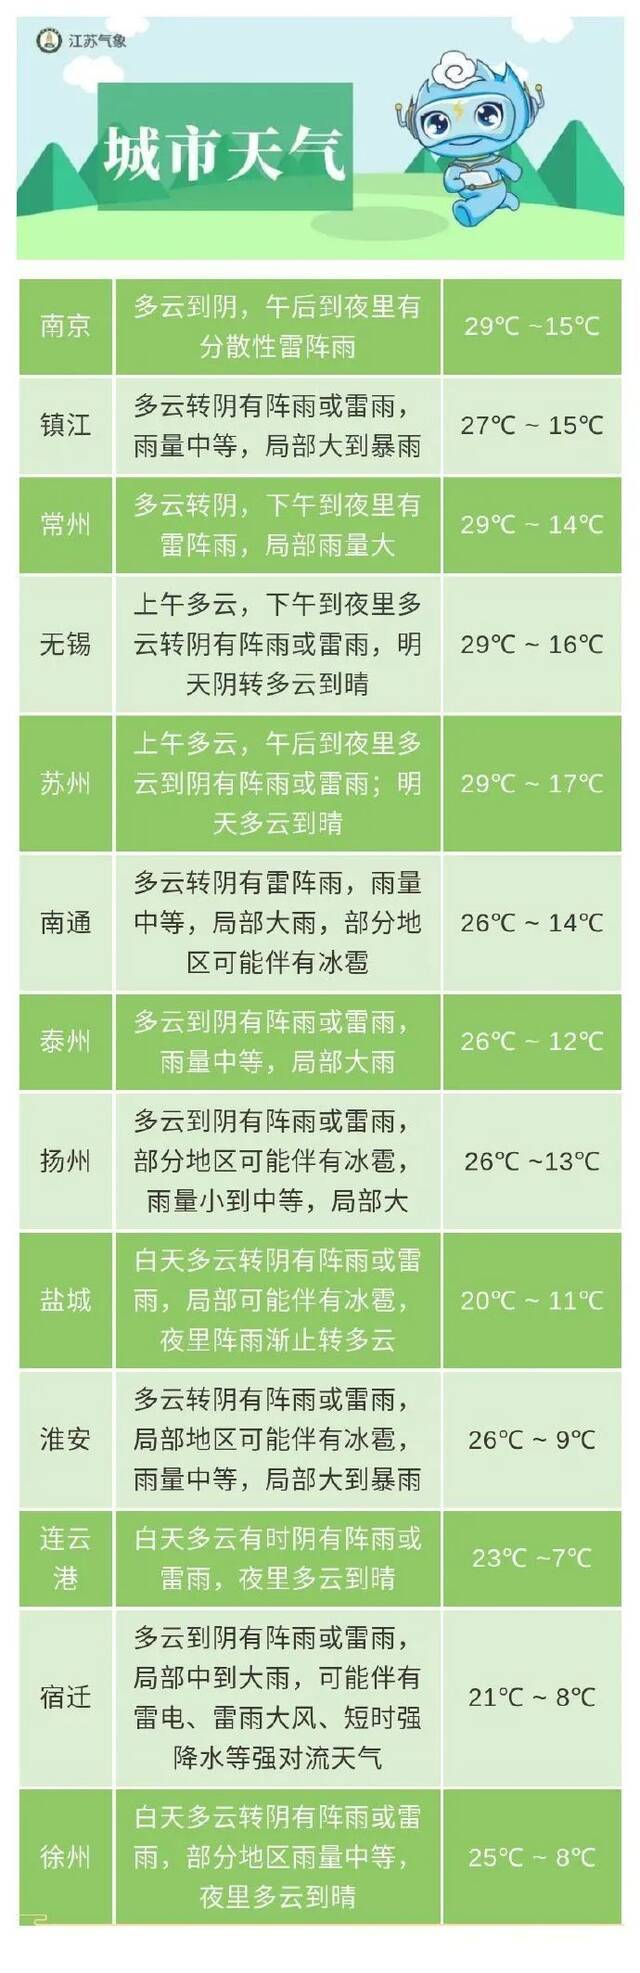 注意！江苏连发131条冰雹雷暴大风预警！